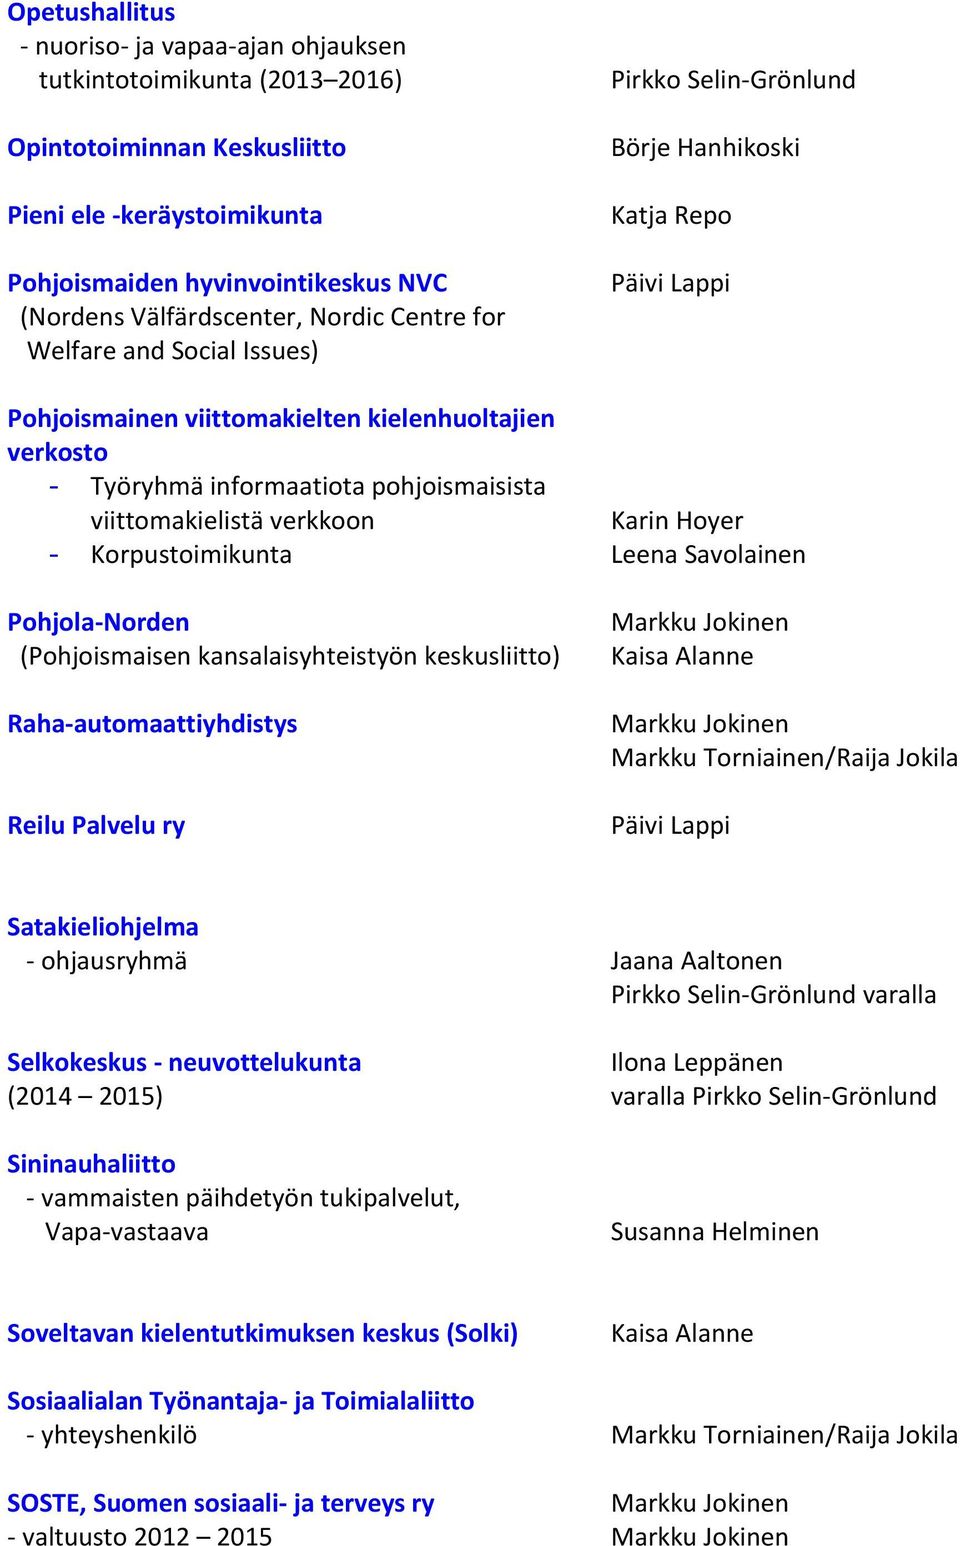 verkkoon Karin Hoyer - Korpustoimikunta Leena Savolainen Pohjola-Norden (Pohjoismaisen kansalaisyhteistyön keskusliitto) Raha-automaattiyhdistys Reilu Palvelu ry Markku Torniainen/Raija Jokila